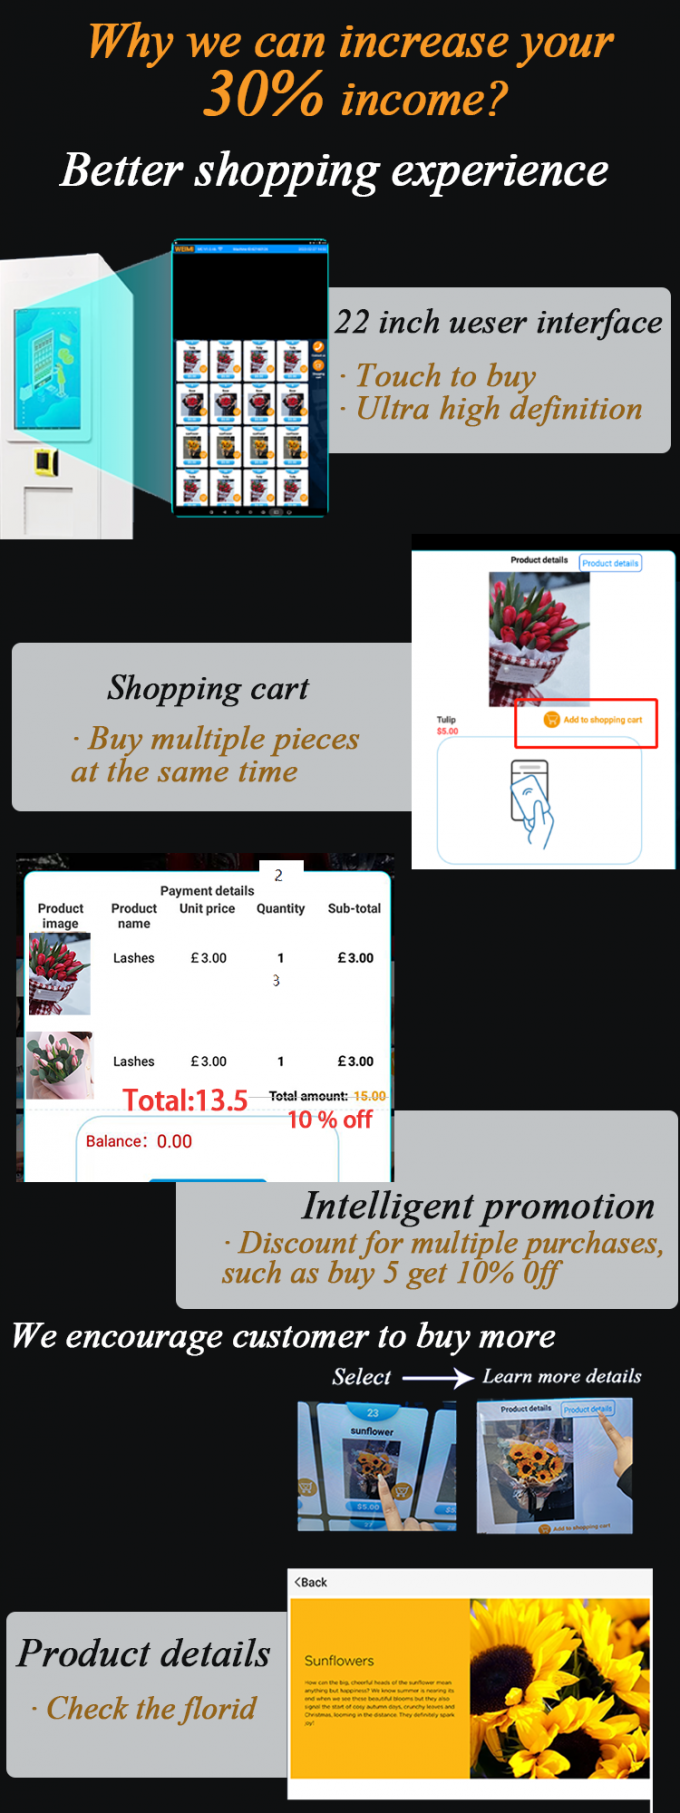 Porque escolha a máquina de venda automática esperta da flor do mícron? Nós podemos aumentar sua renda de 30%! nossa máquina é inteligente e para oferecer a cliente a melhor experiência de compra